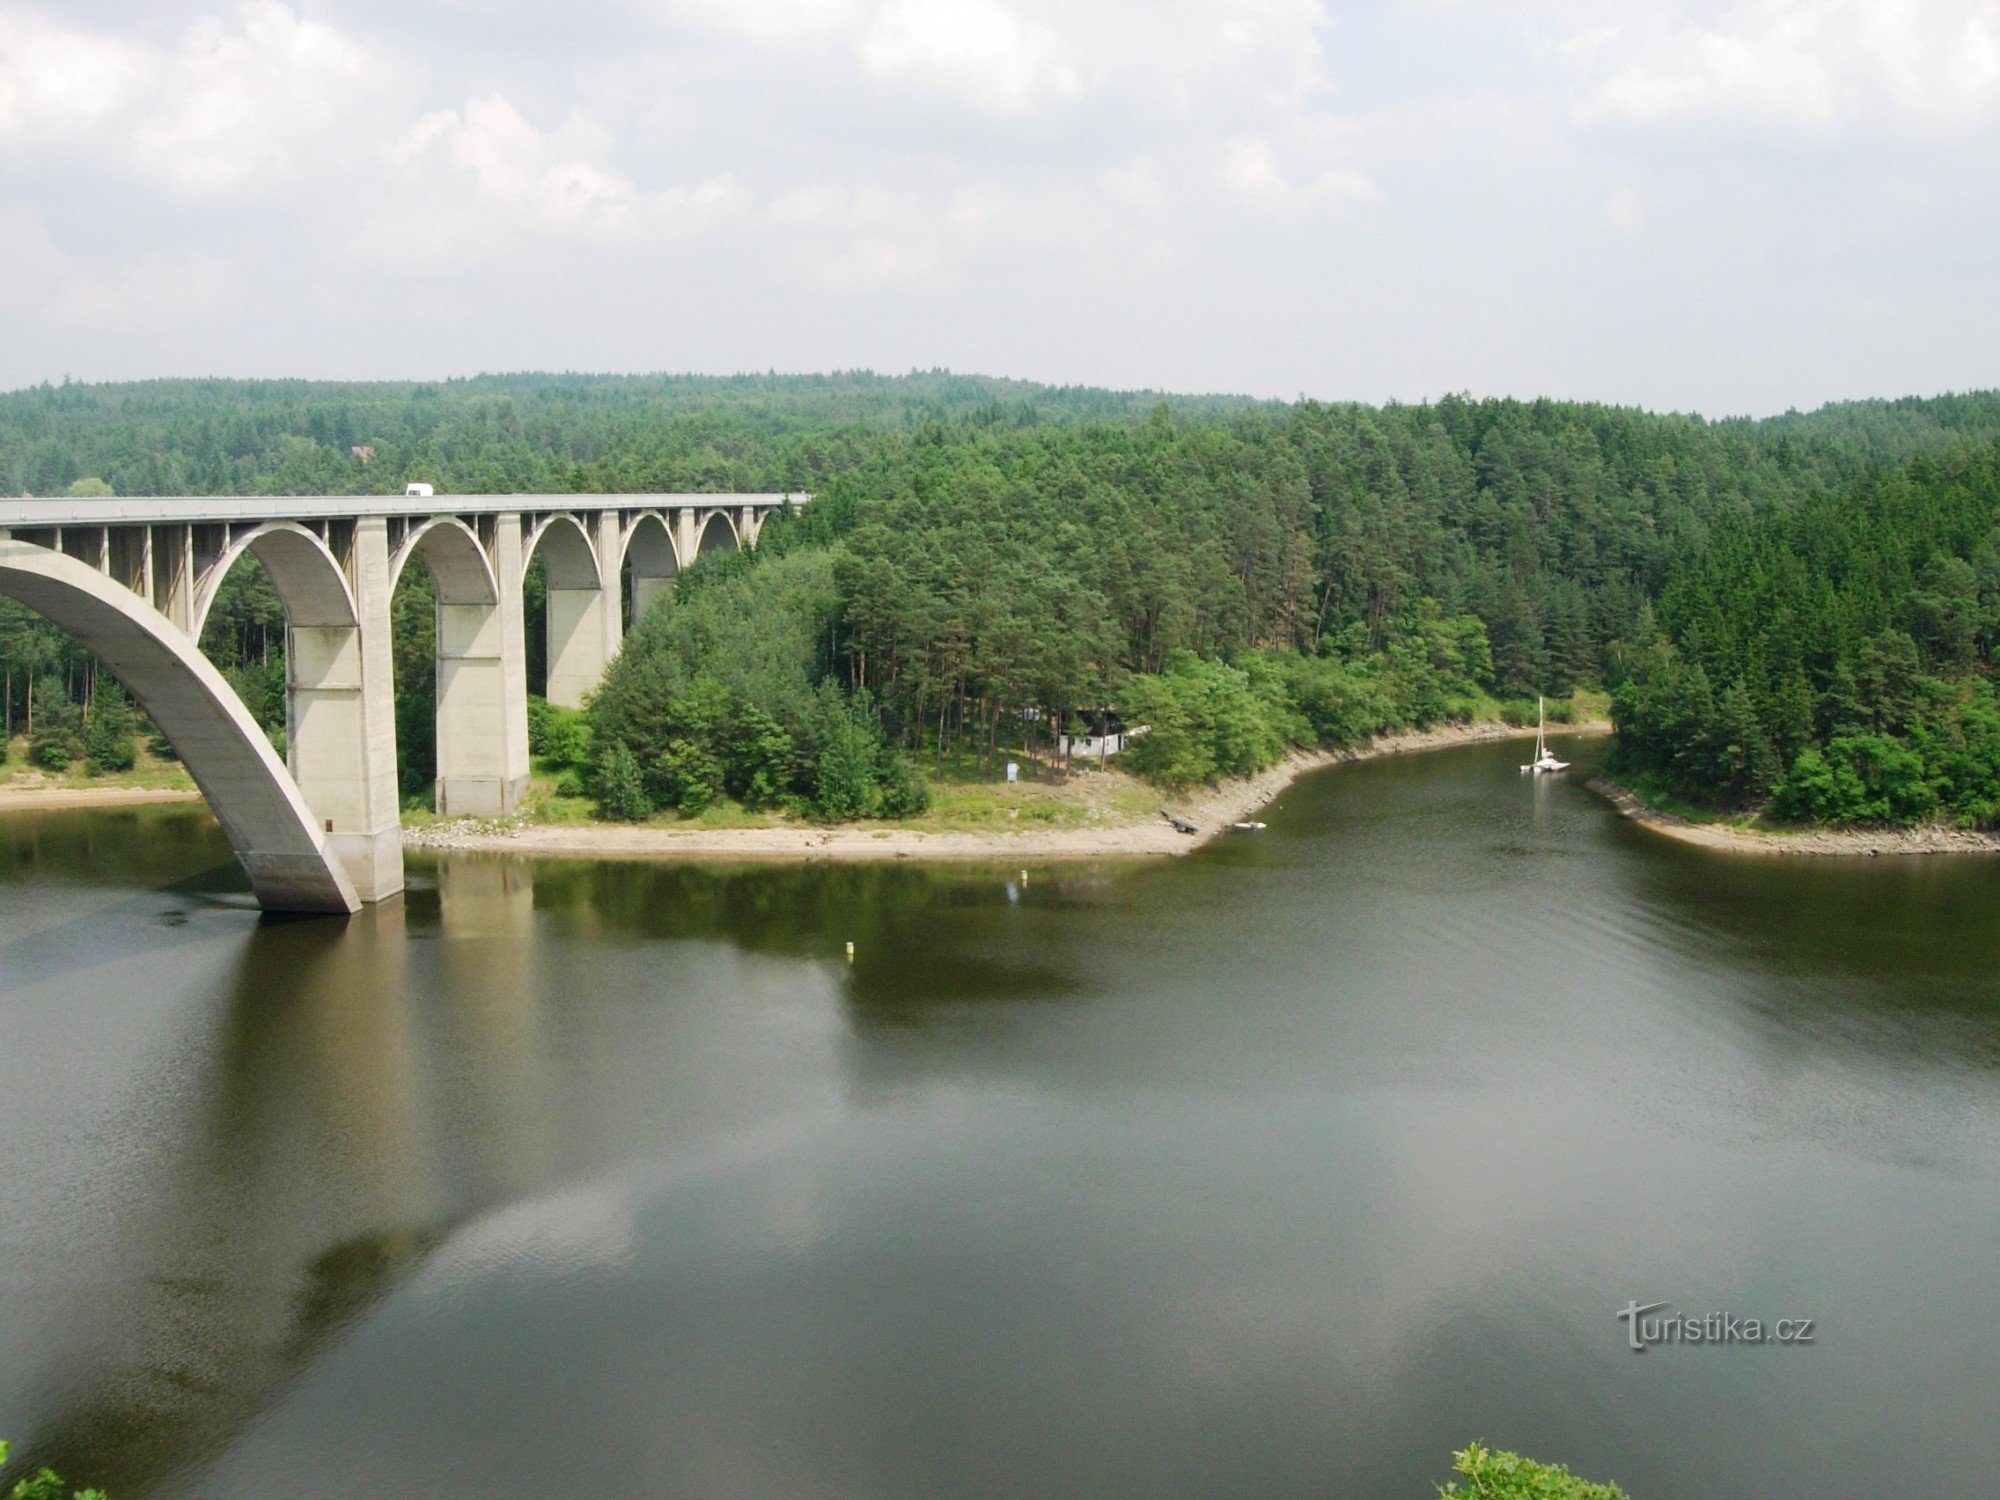 Podolský most in zaliv na Budovické potok